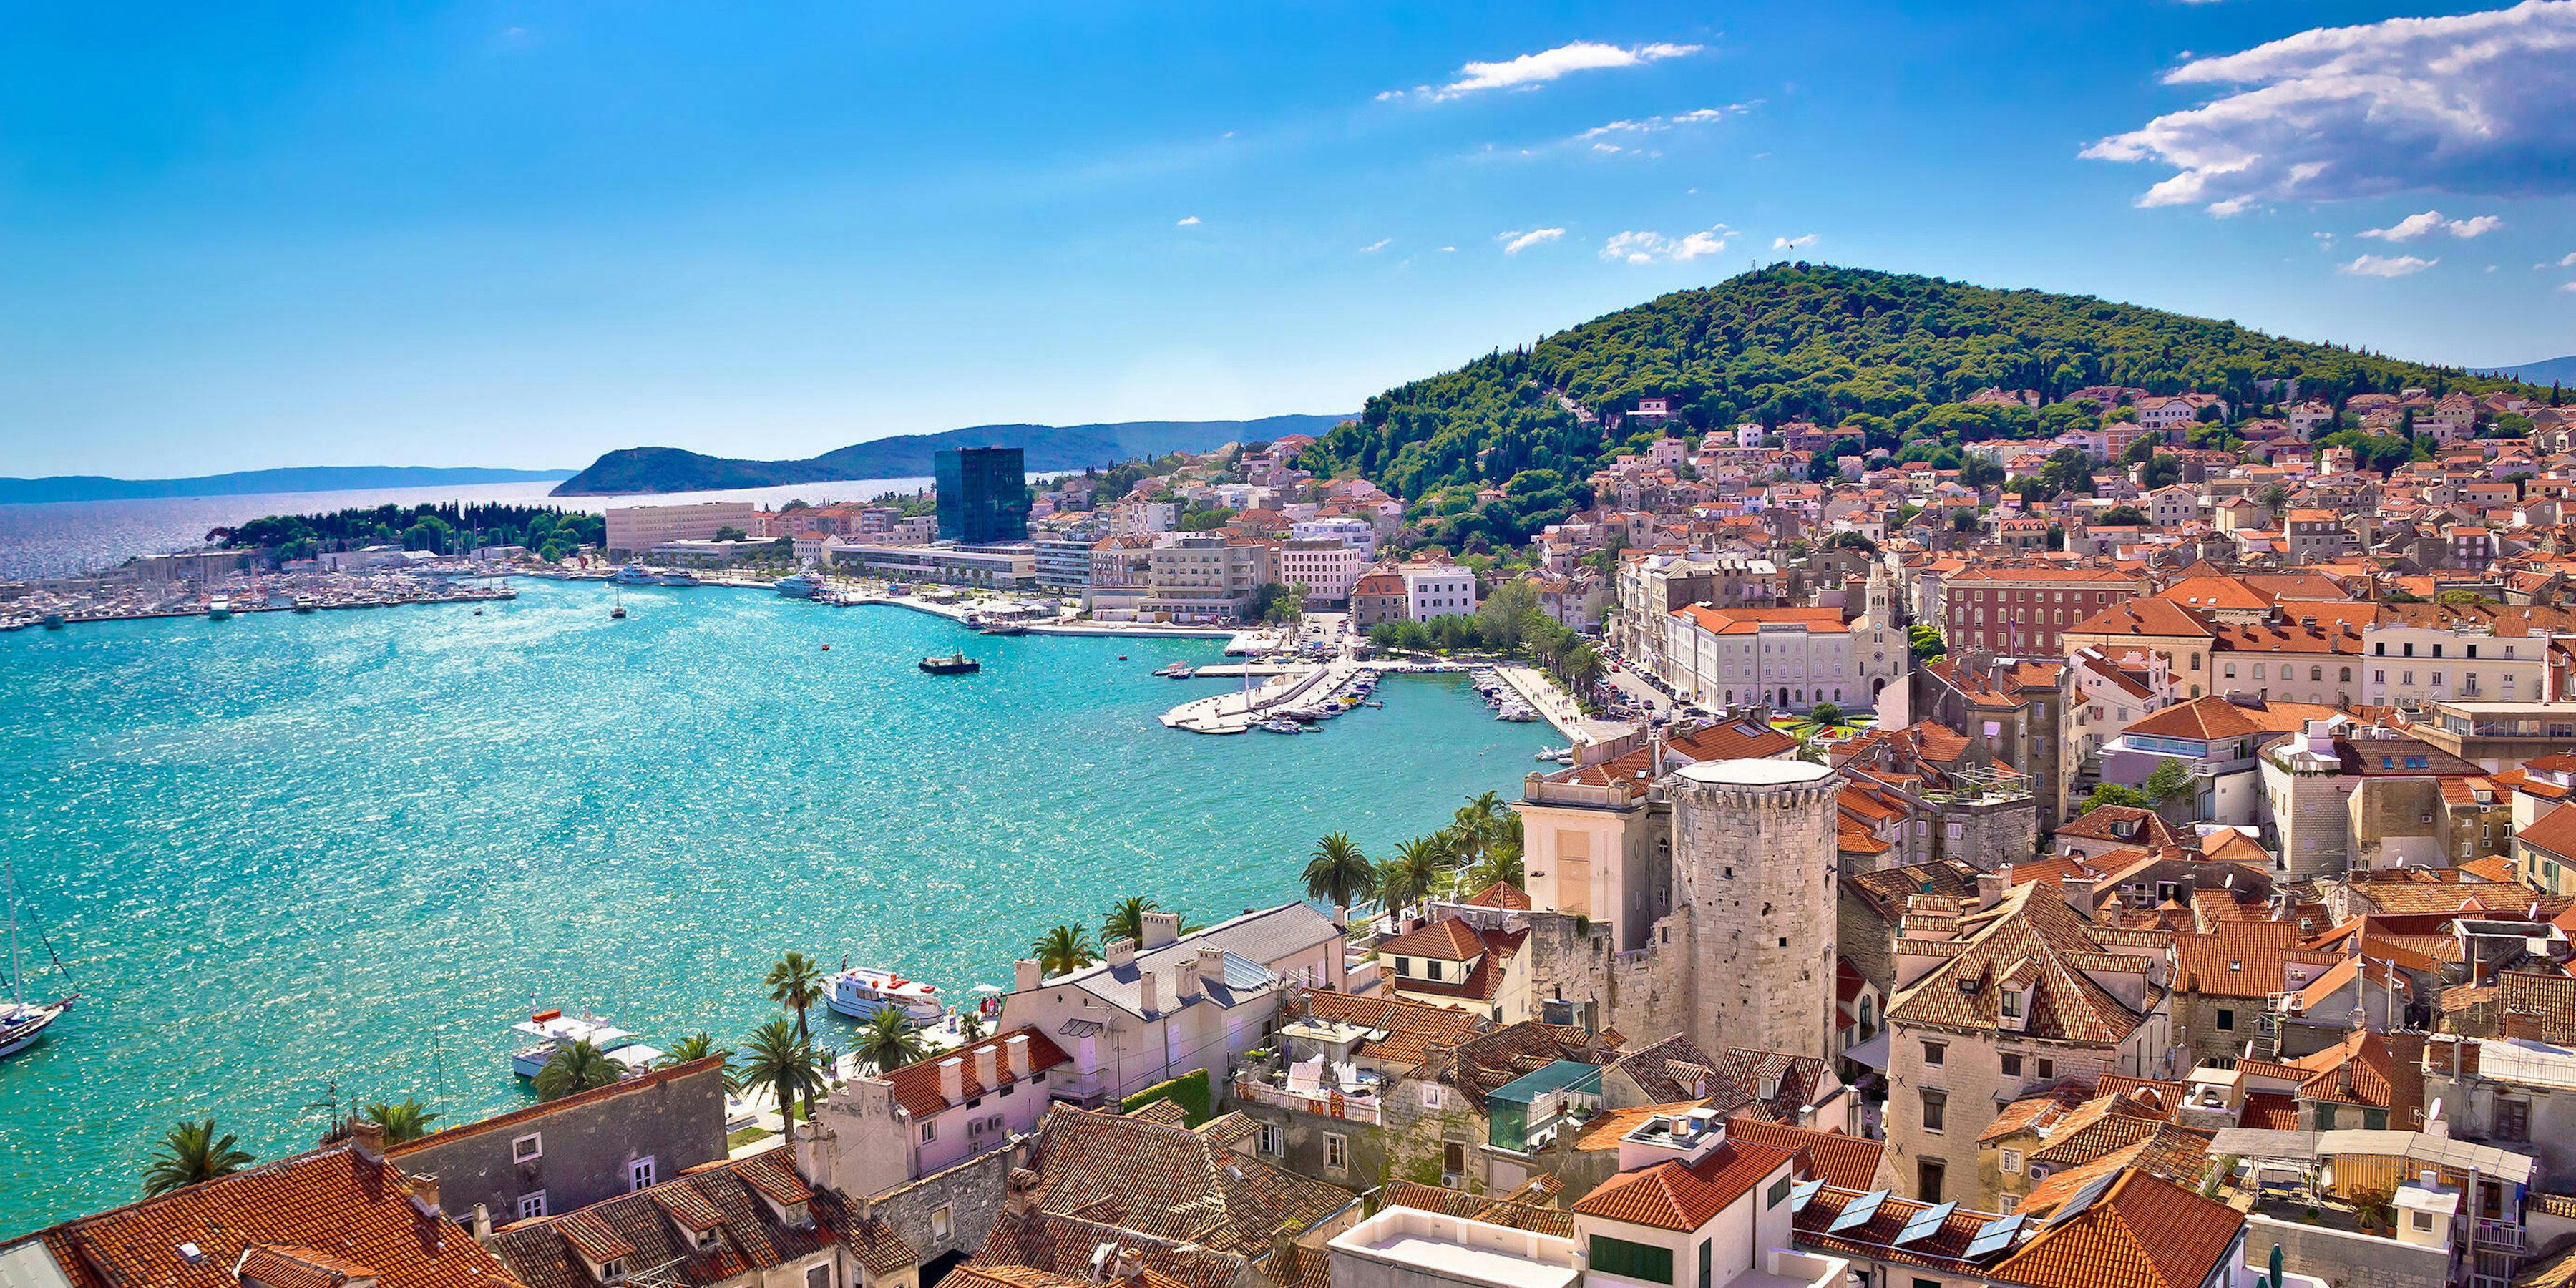 Dalmatian Coast Cruise Tips